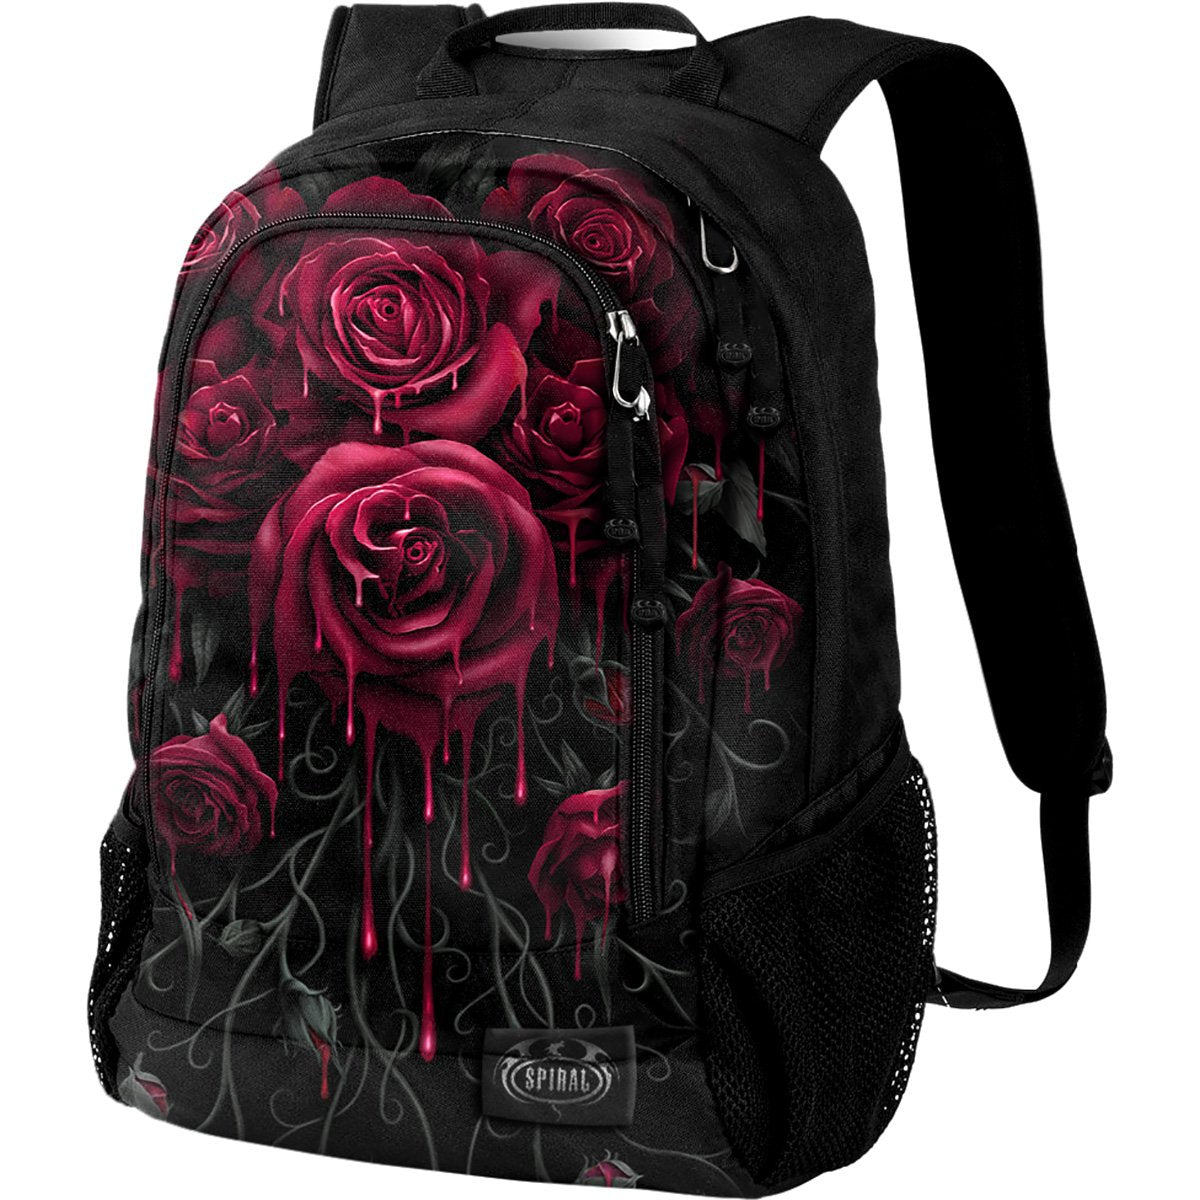 BLOOD ROSE - Back Pack - With Laptop Pocket - Spiral USA